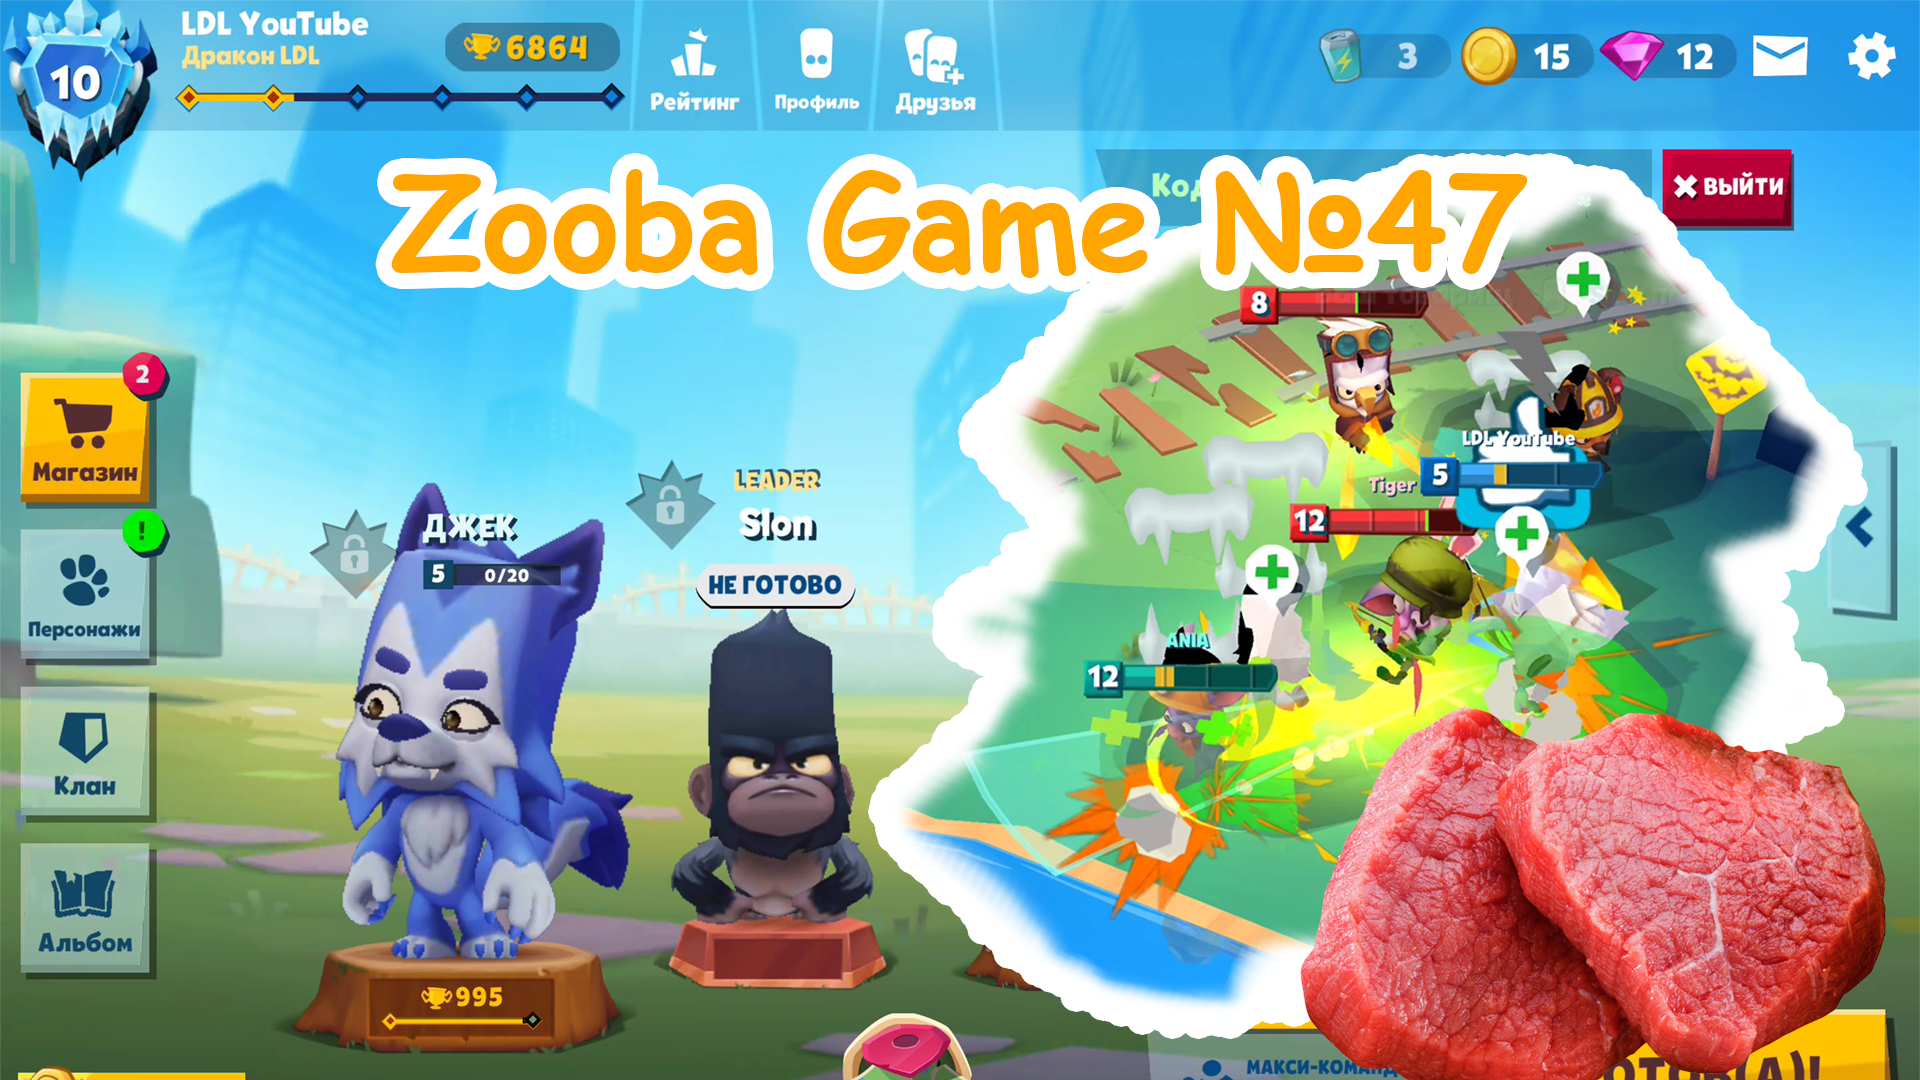 Zooba Game #47 #zooba